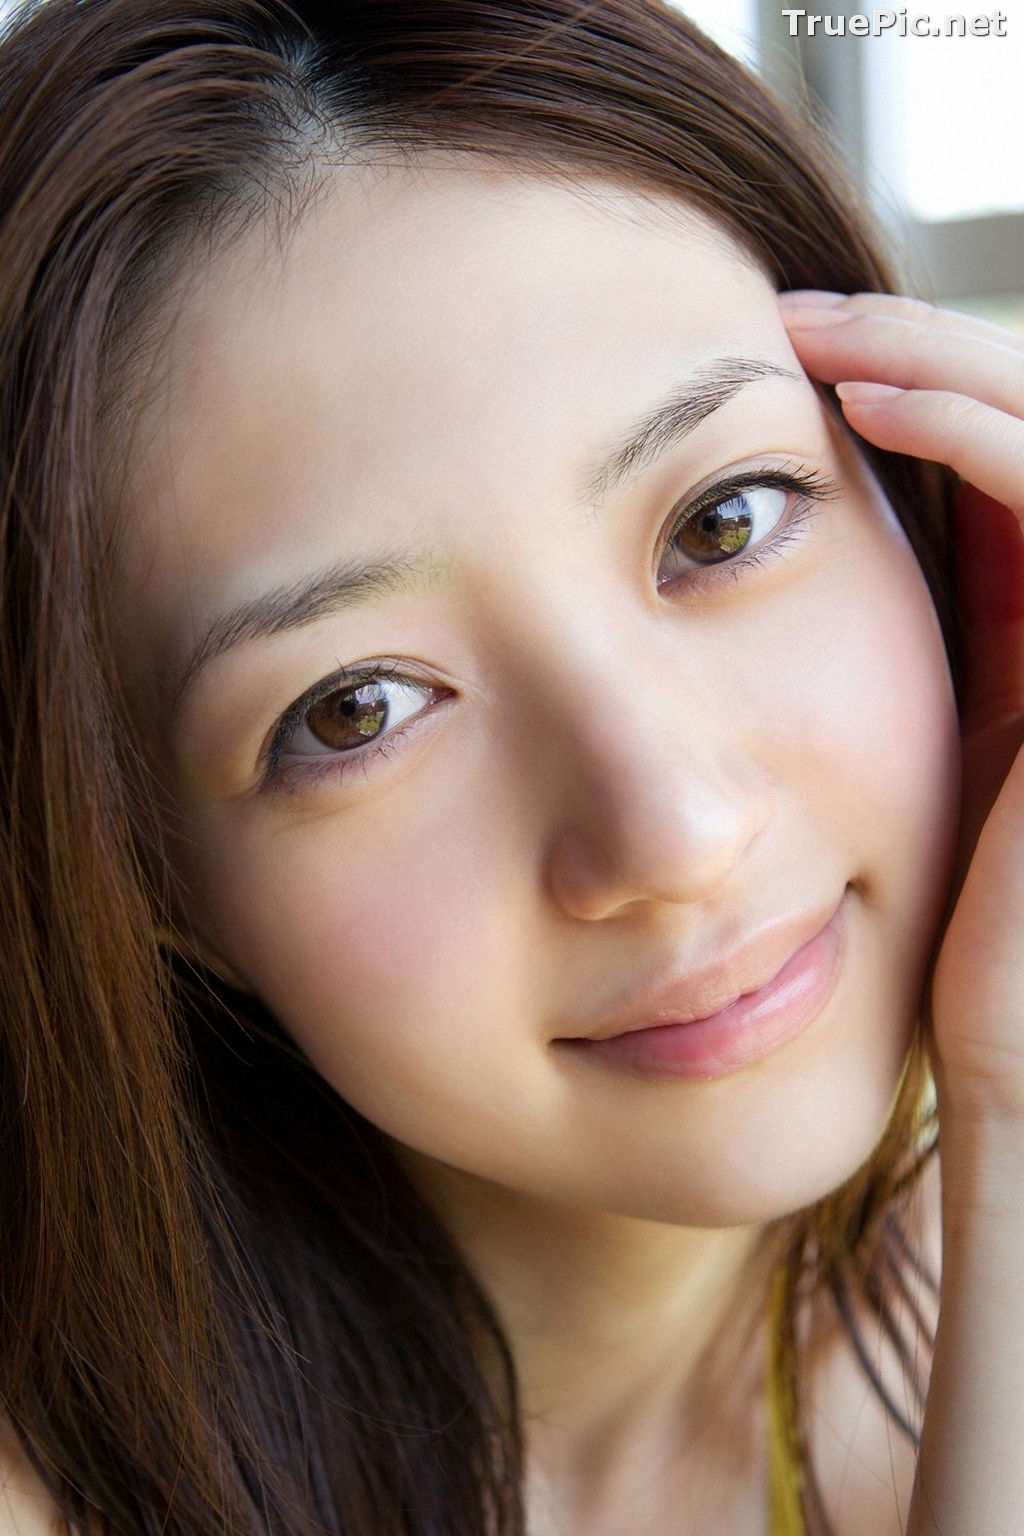 Image YS Web Vol.497 - Japanese Actress and Gravure Idol - Rina Aizawa - TruePic.net - Picture-93